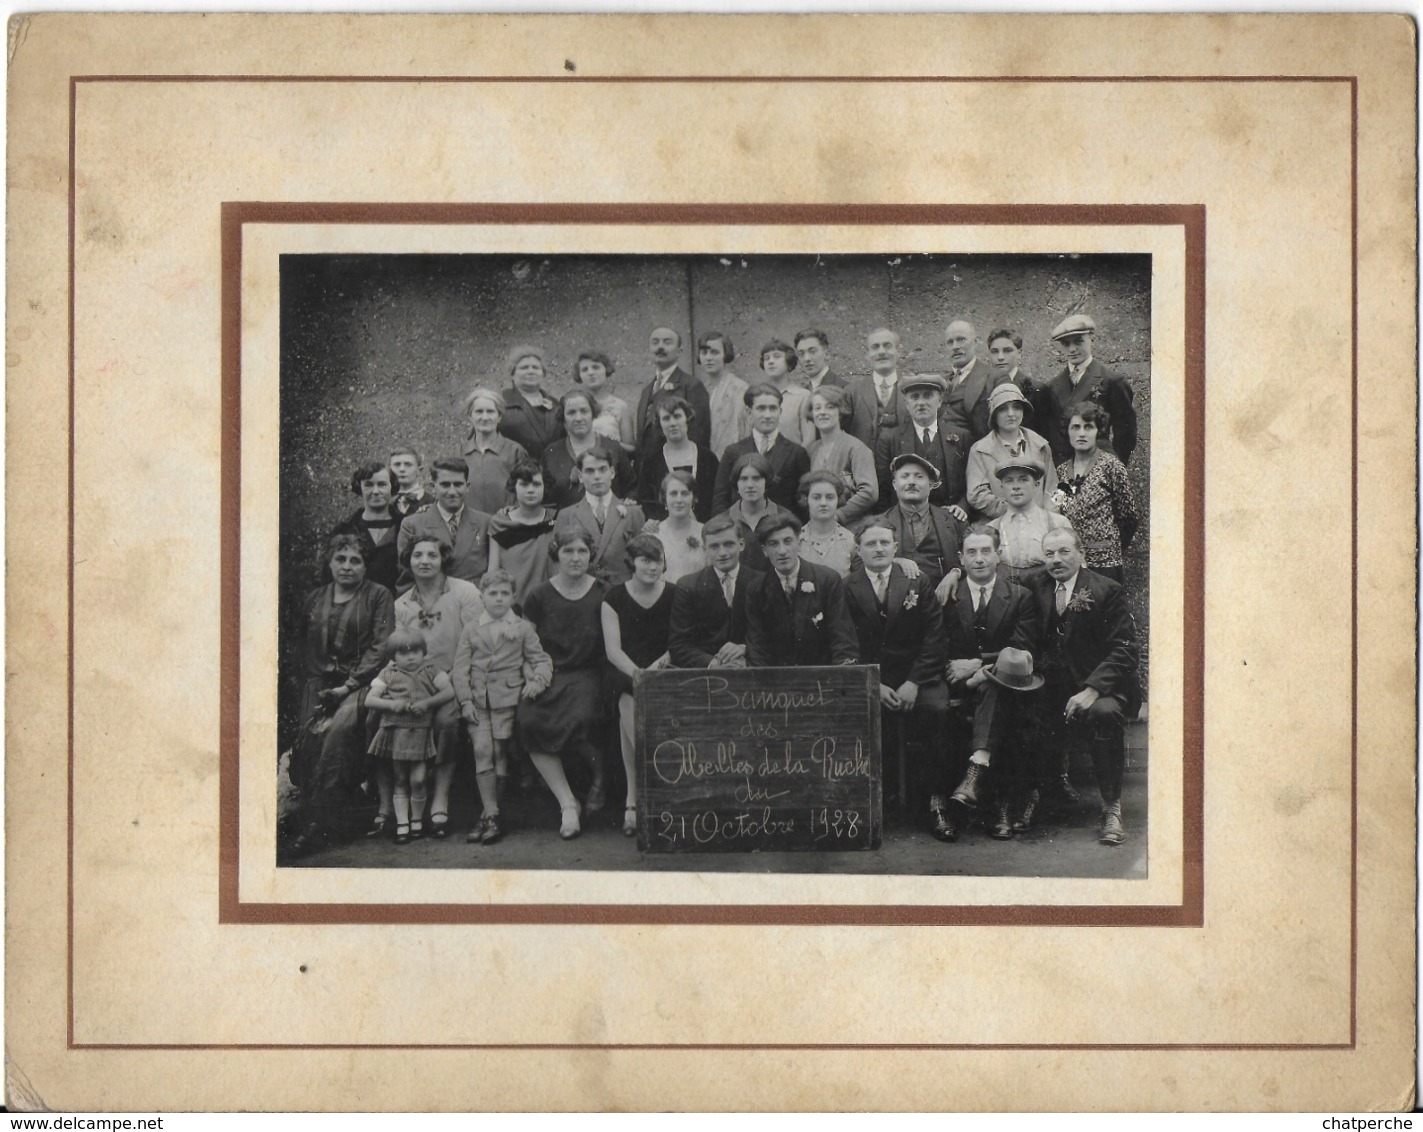 PHOTO PHOTOGRAPHIE BANQUET DES ABEILLES DE LA RUCHE 21 OCTOBRE 1928 - Personnes Anonymes